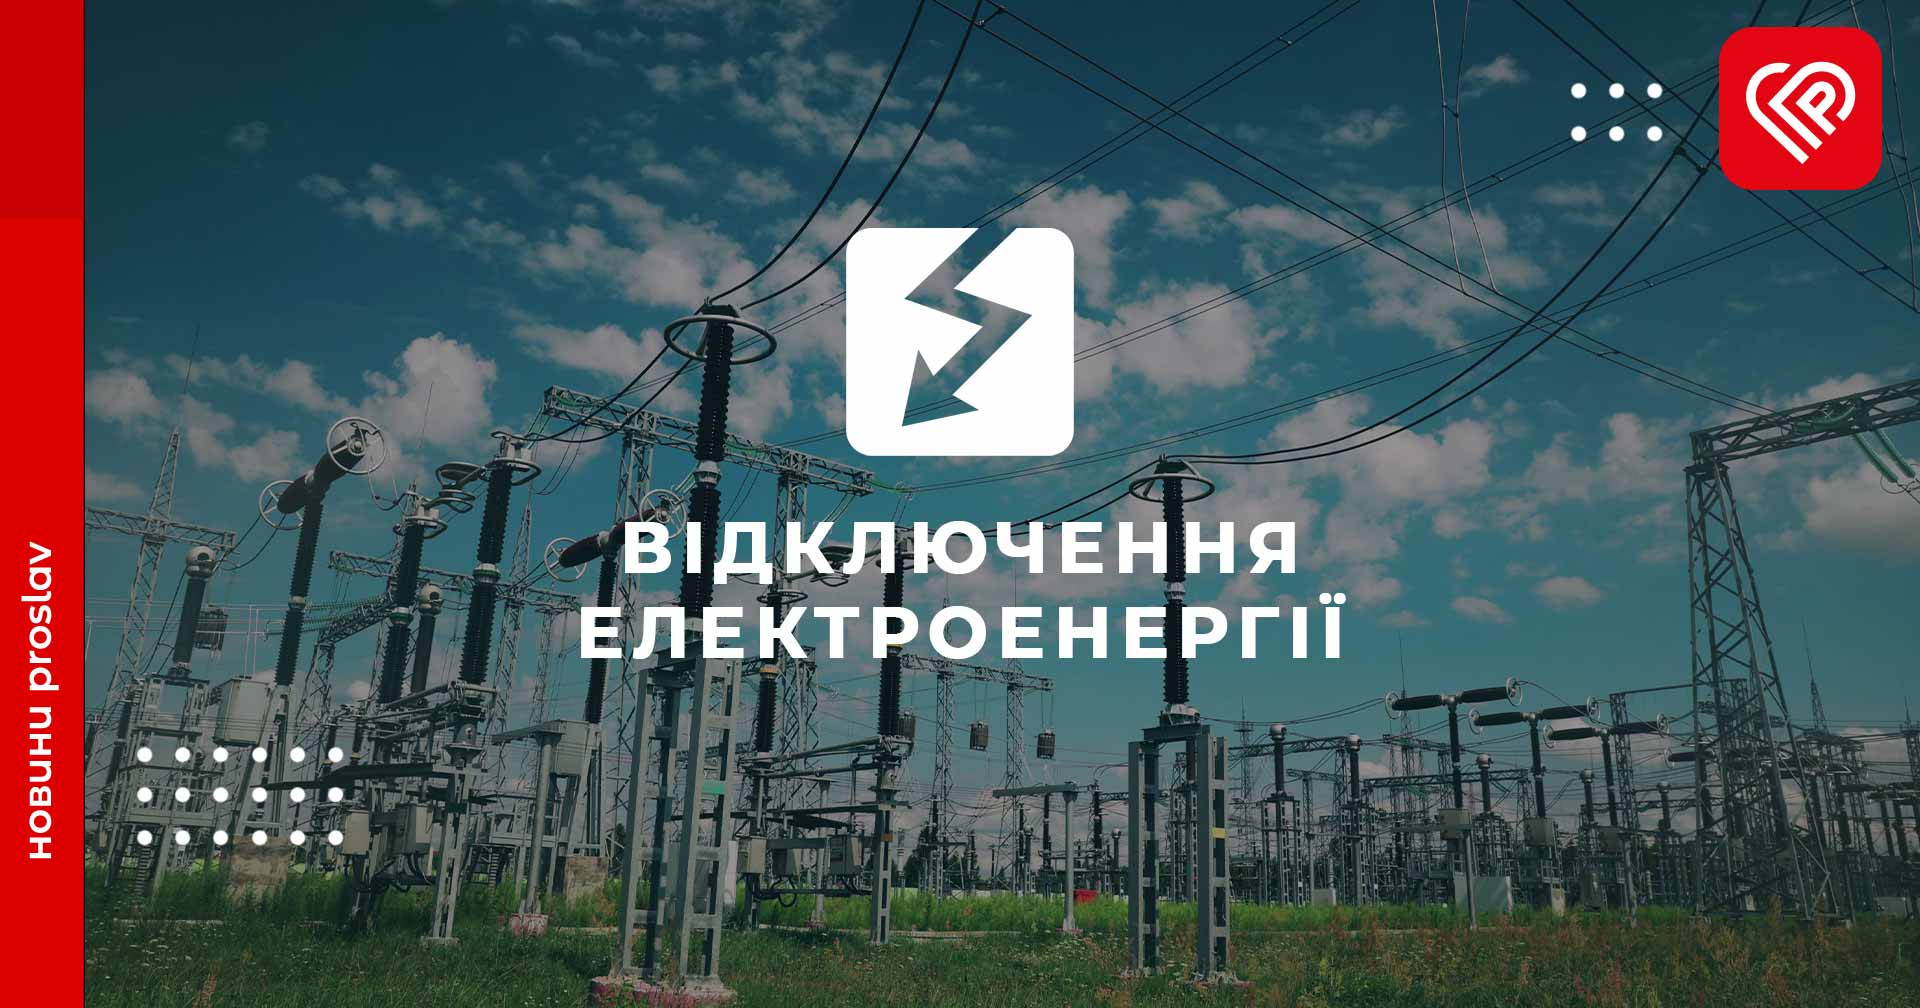 На Київщині тривають екстрені відключення світла, графіки не діють — ДТЕК